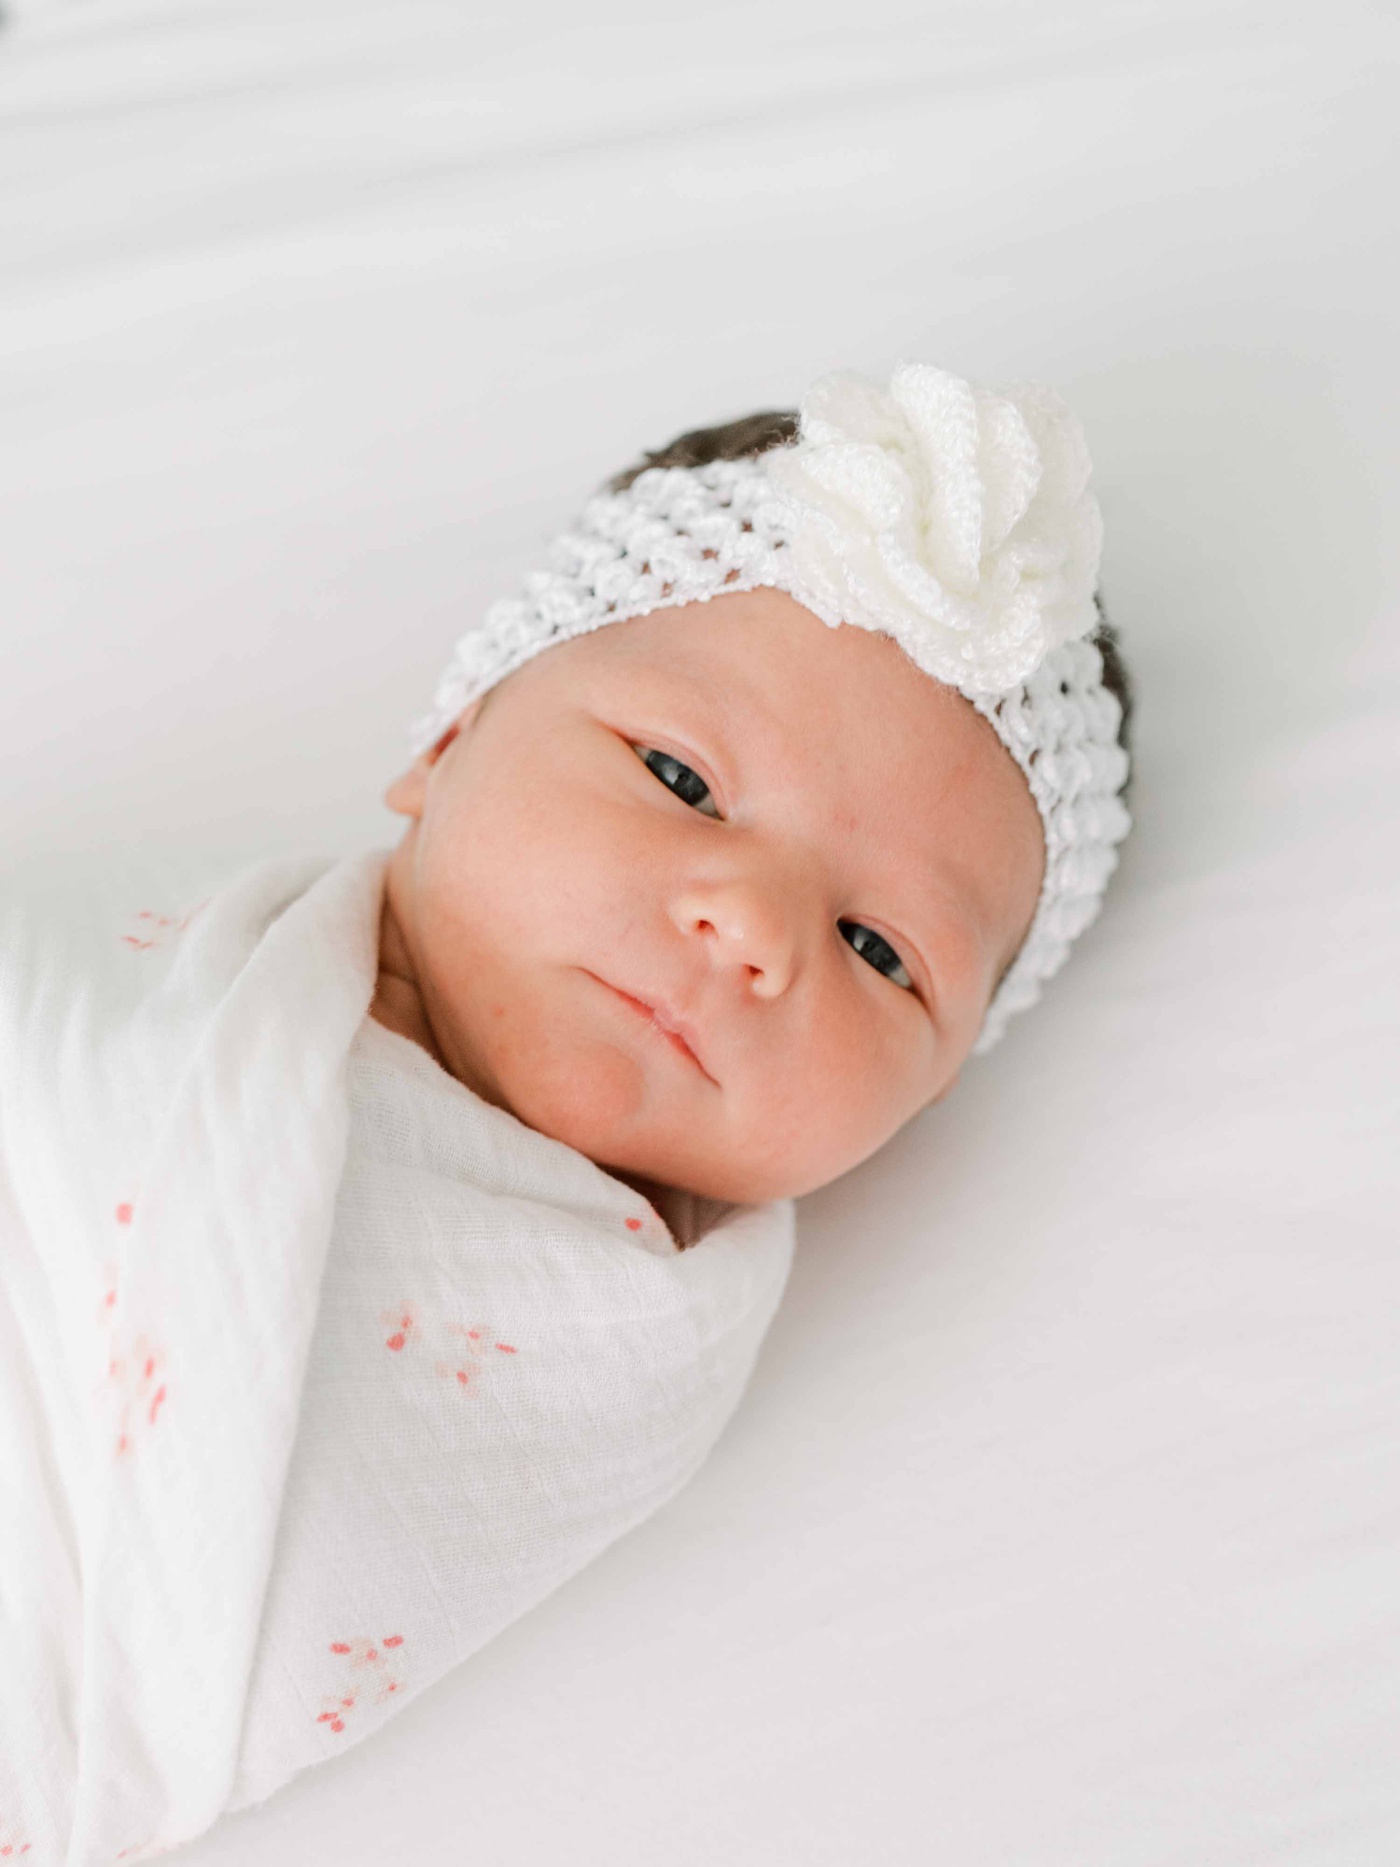 Baby girl newborn photoshoot